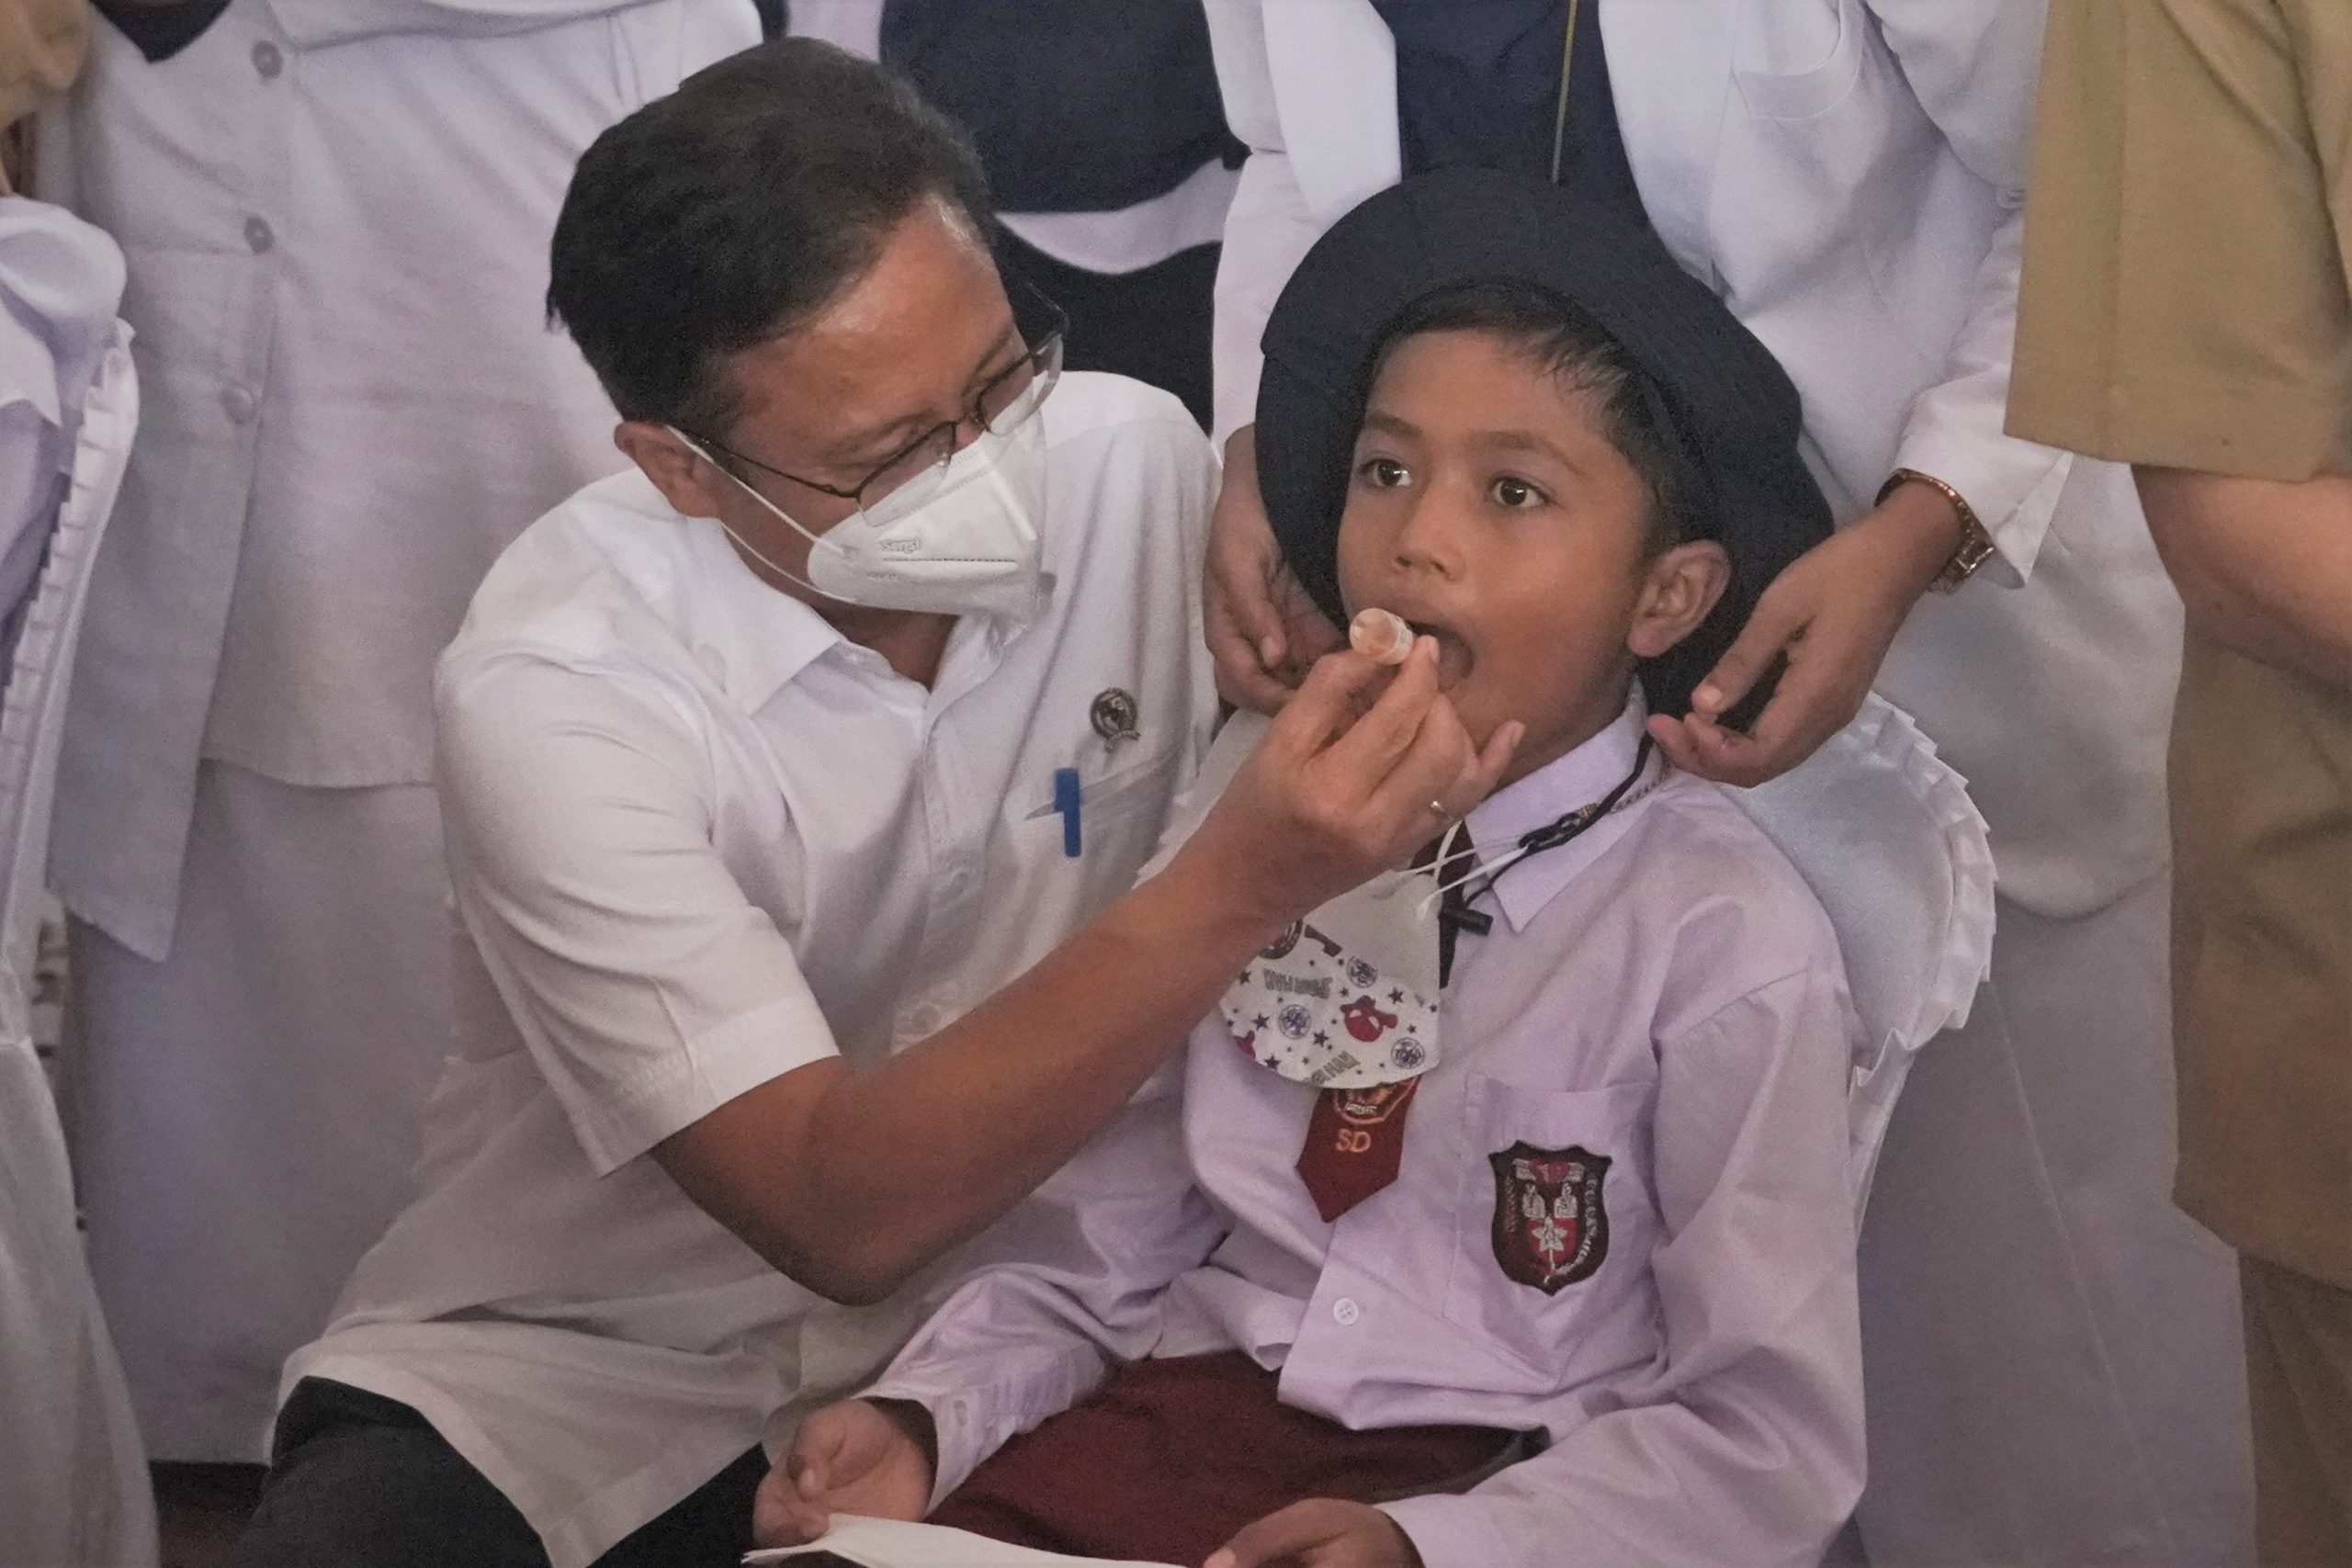 Menkes Budi Harap Aceh Bebas Polio dalam Sebulan